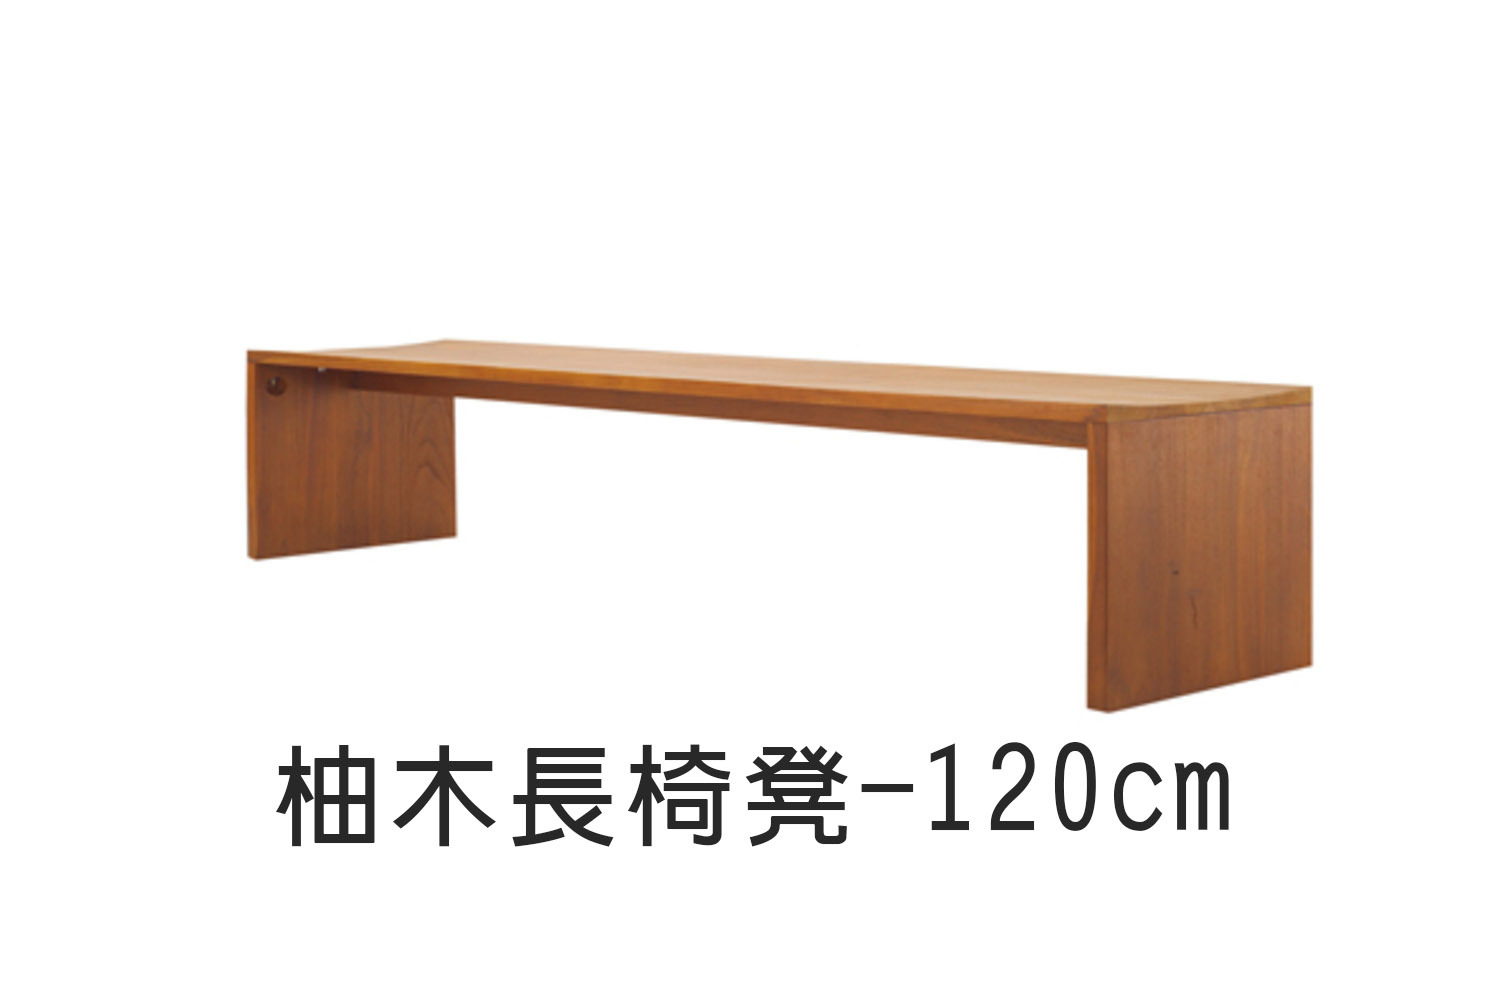 柚木長椅凳-120cm WMCH31T1